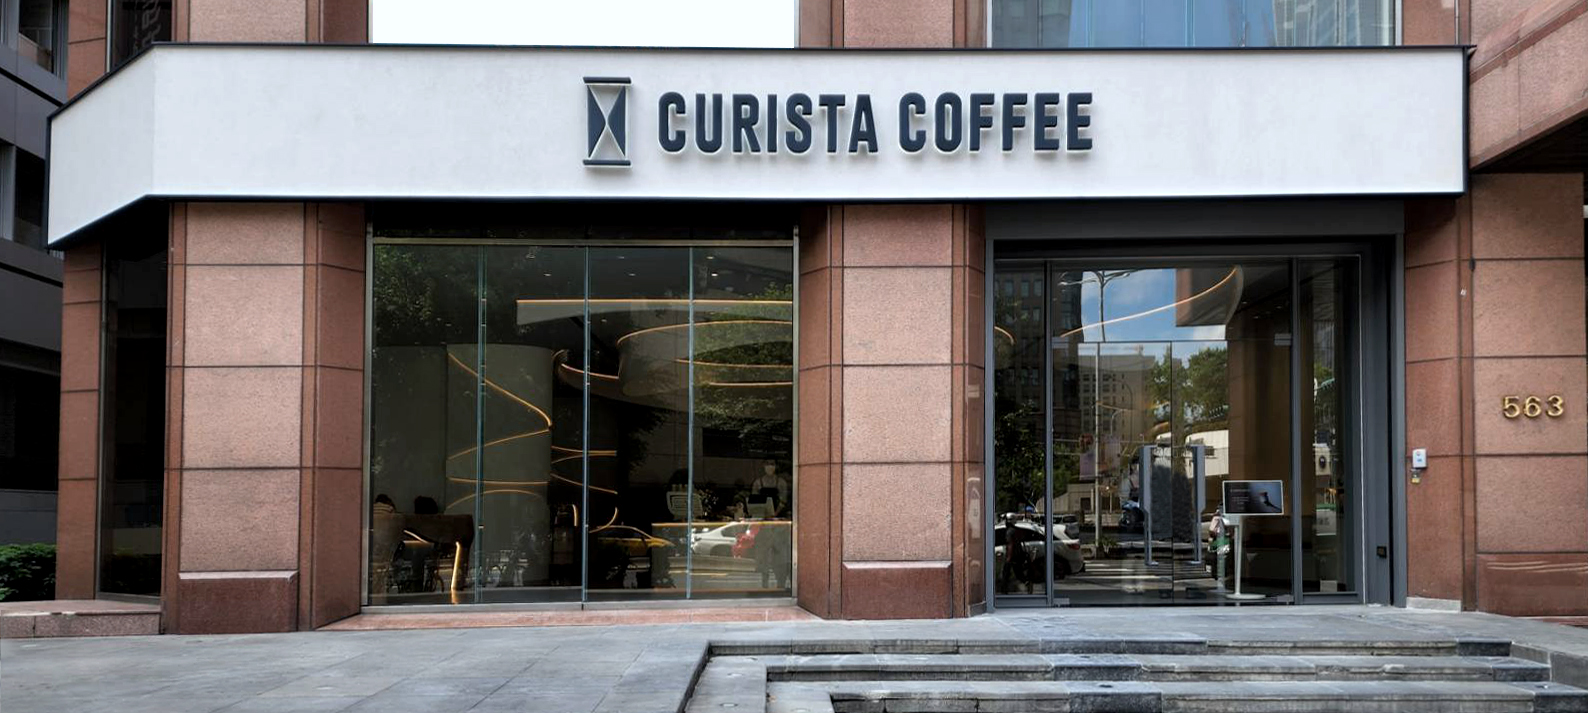 台北首家大型精品咖啡旗艦店「CURISTA COFFEE 奎士咖啡」落腳信義區 七月盛大開幕試營運 @3C 達人廖阿輝